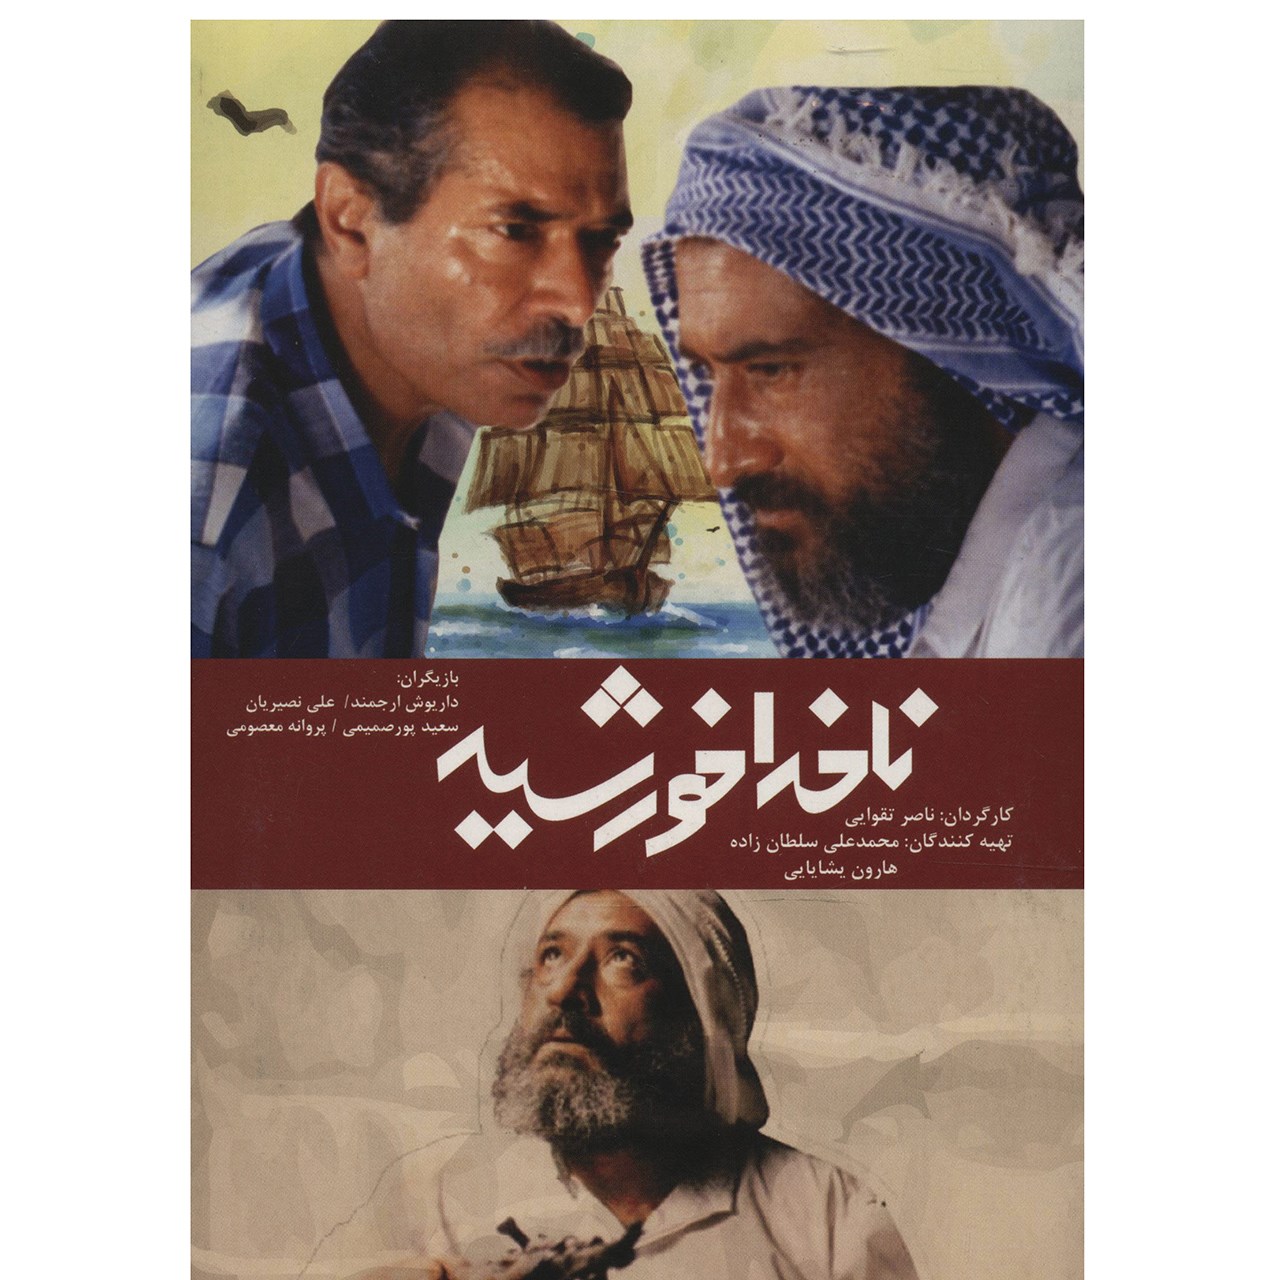 فیلم سینمایی ناخدا خورشید اثر ناصر تقوایی